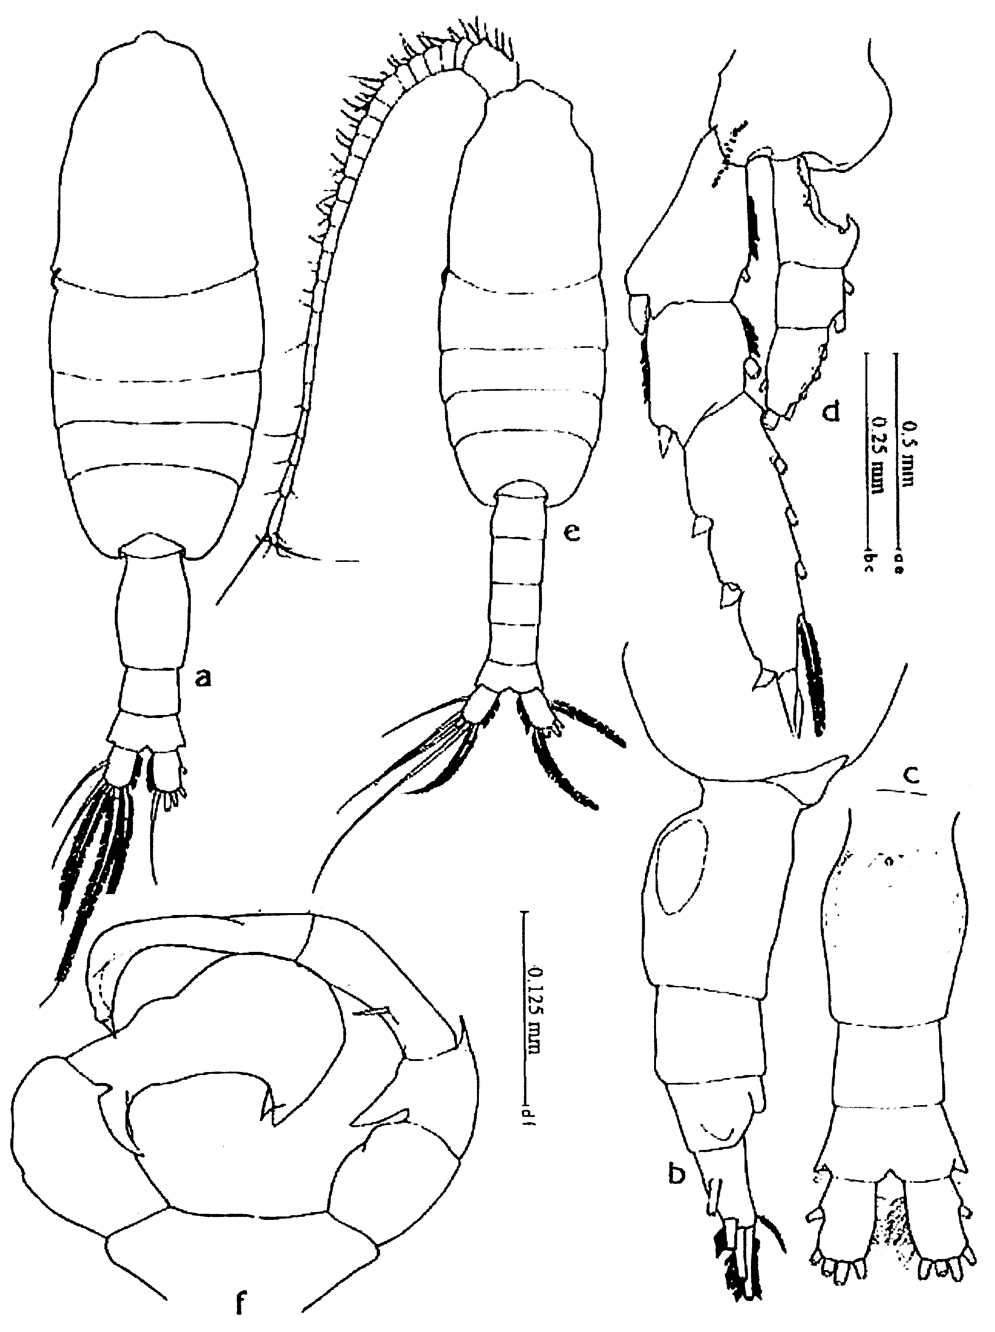 Espèce Pleuromamma robusta - Planche 12 de figures morphologiques